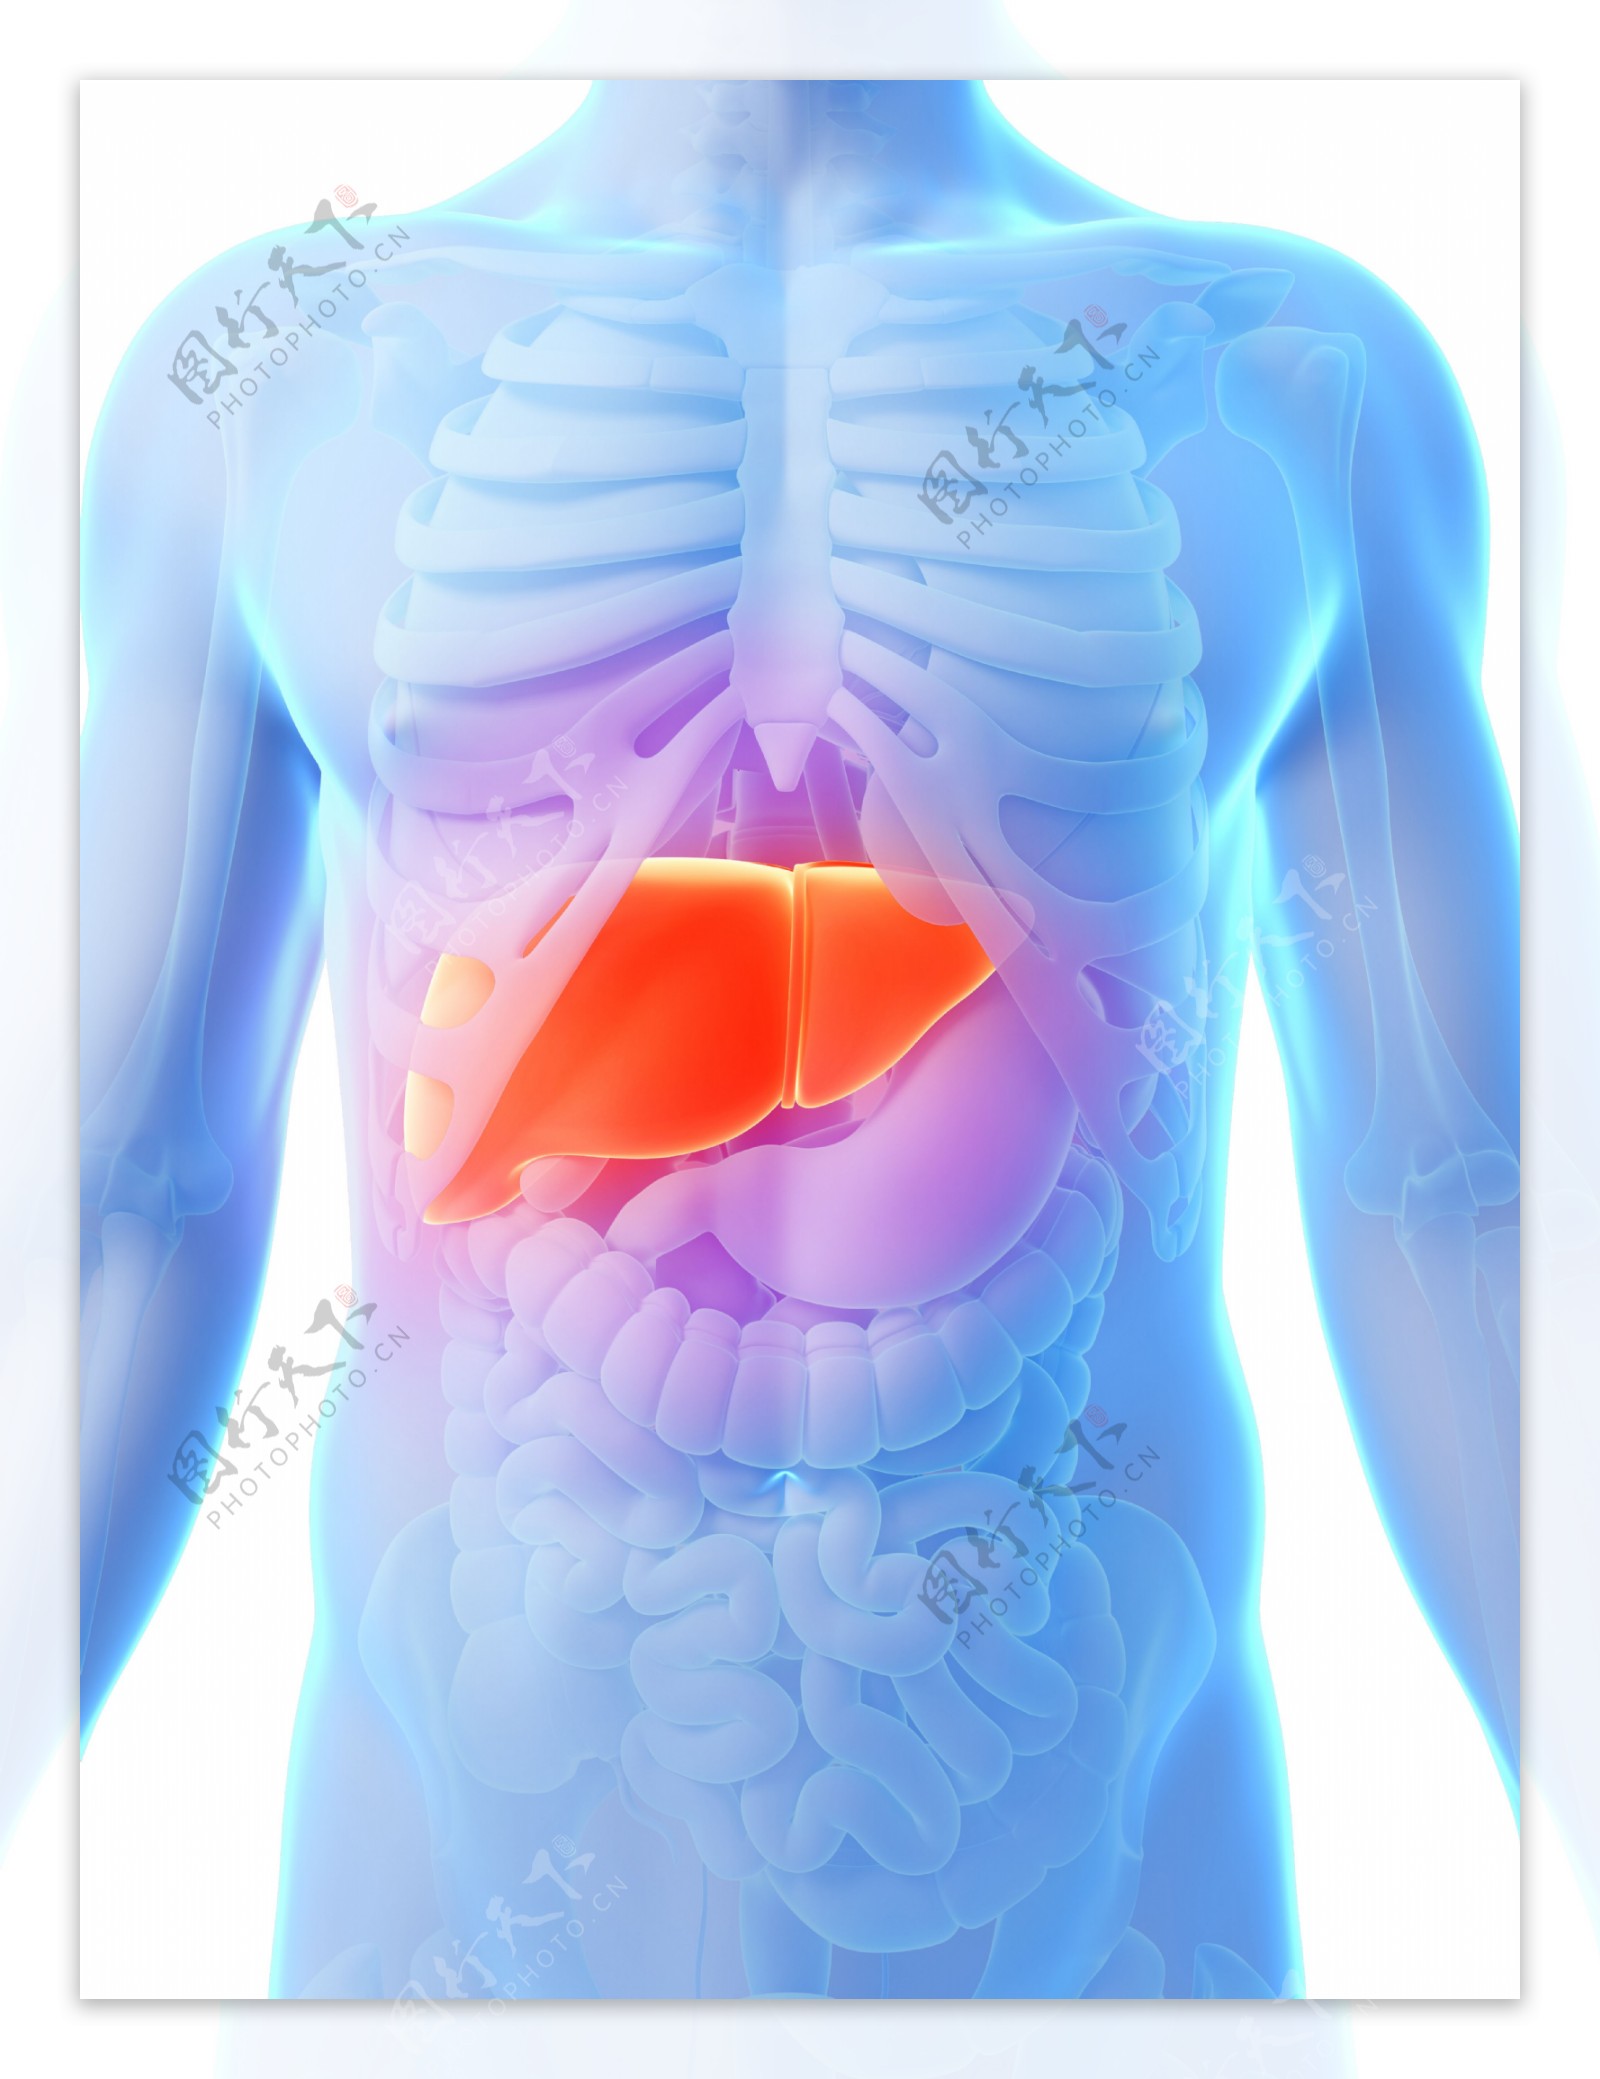 人体肝脏器官图片